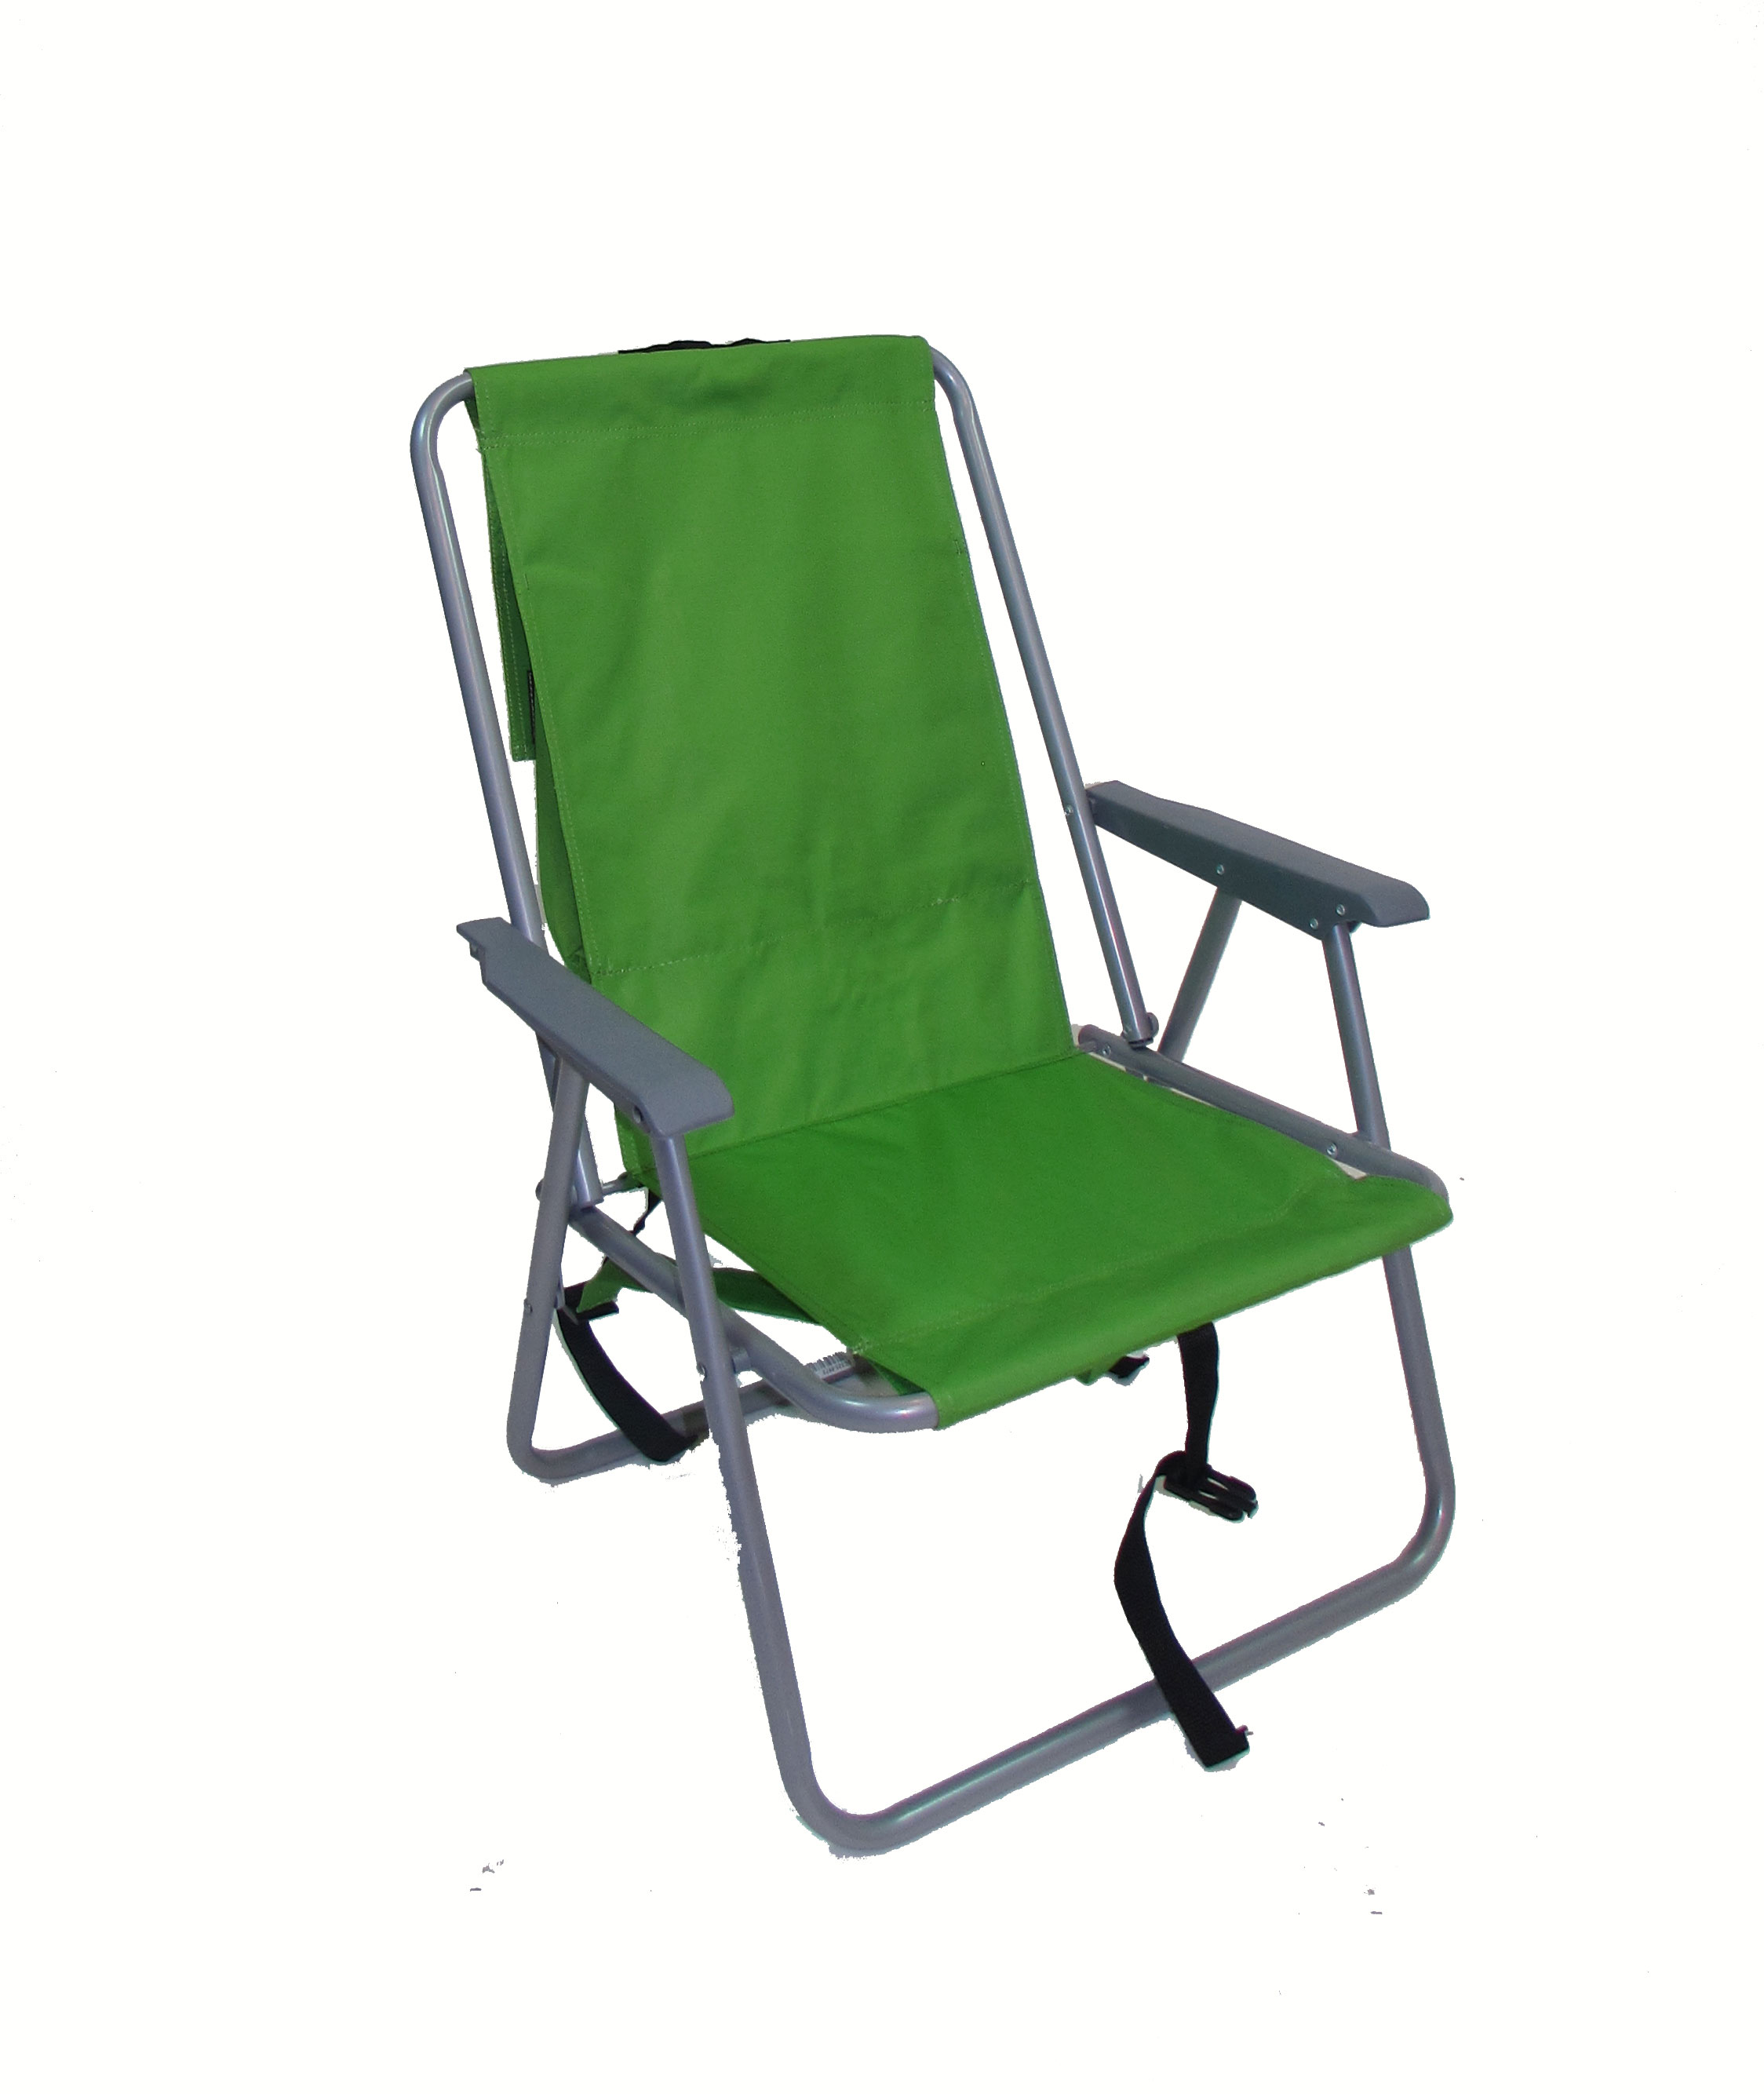  Basic Beach Chair with Simple Decor